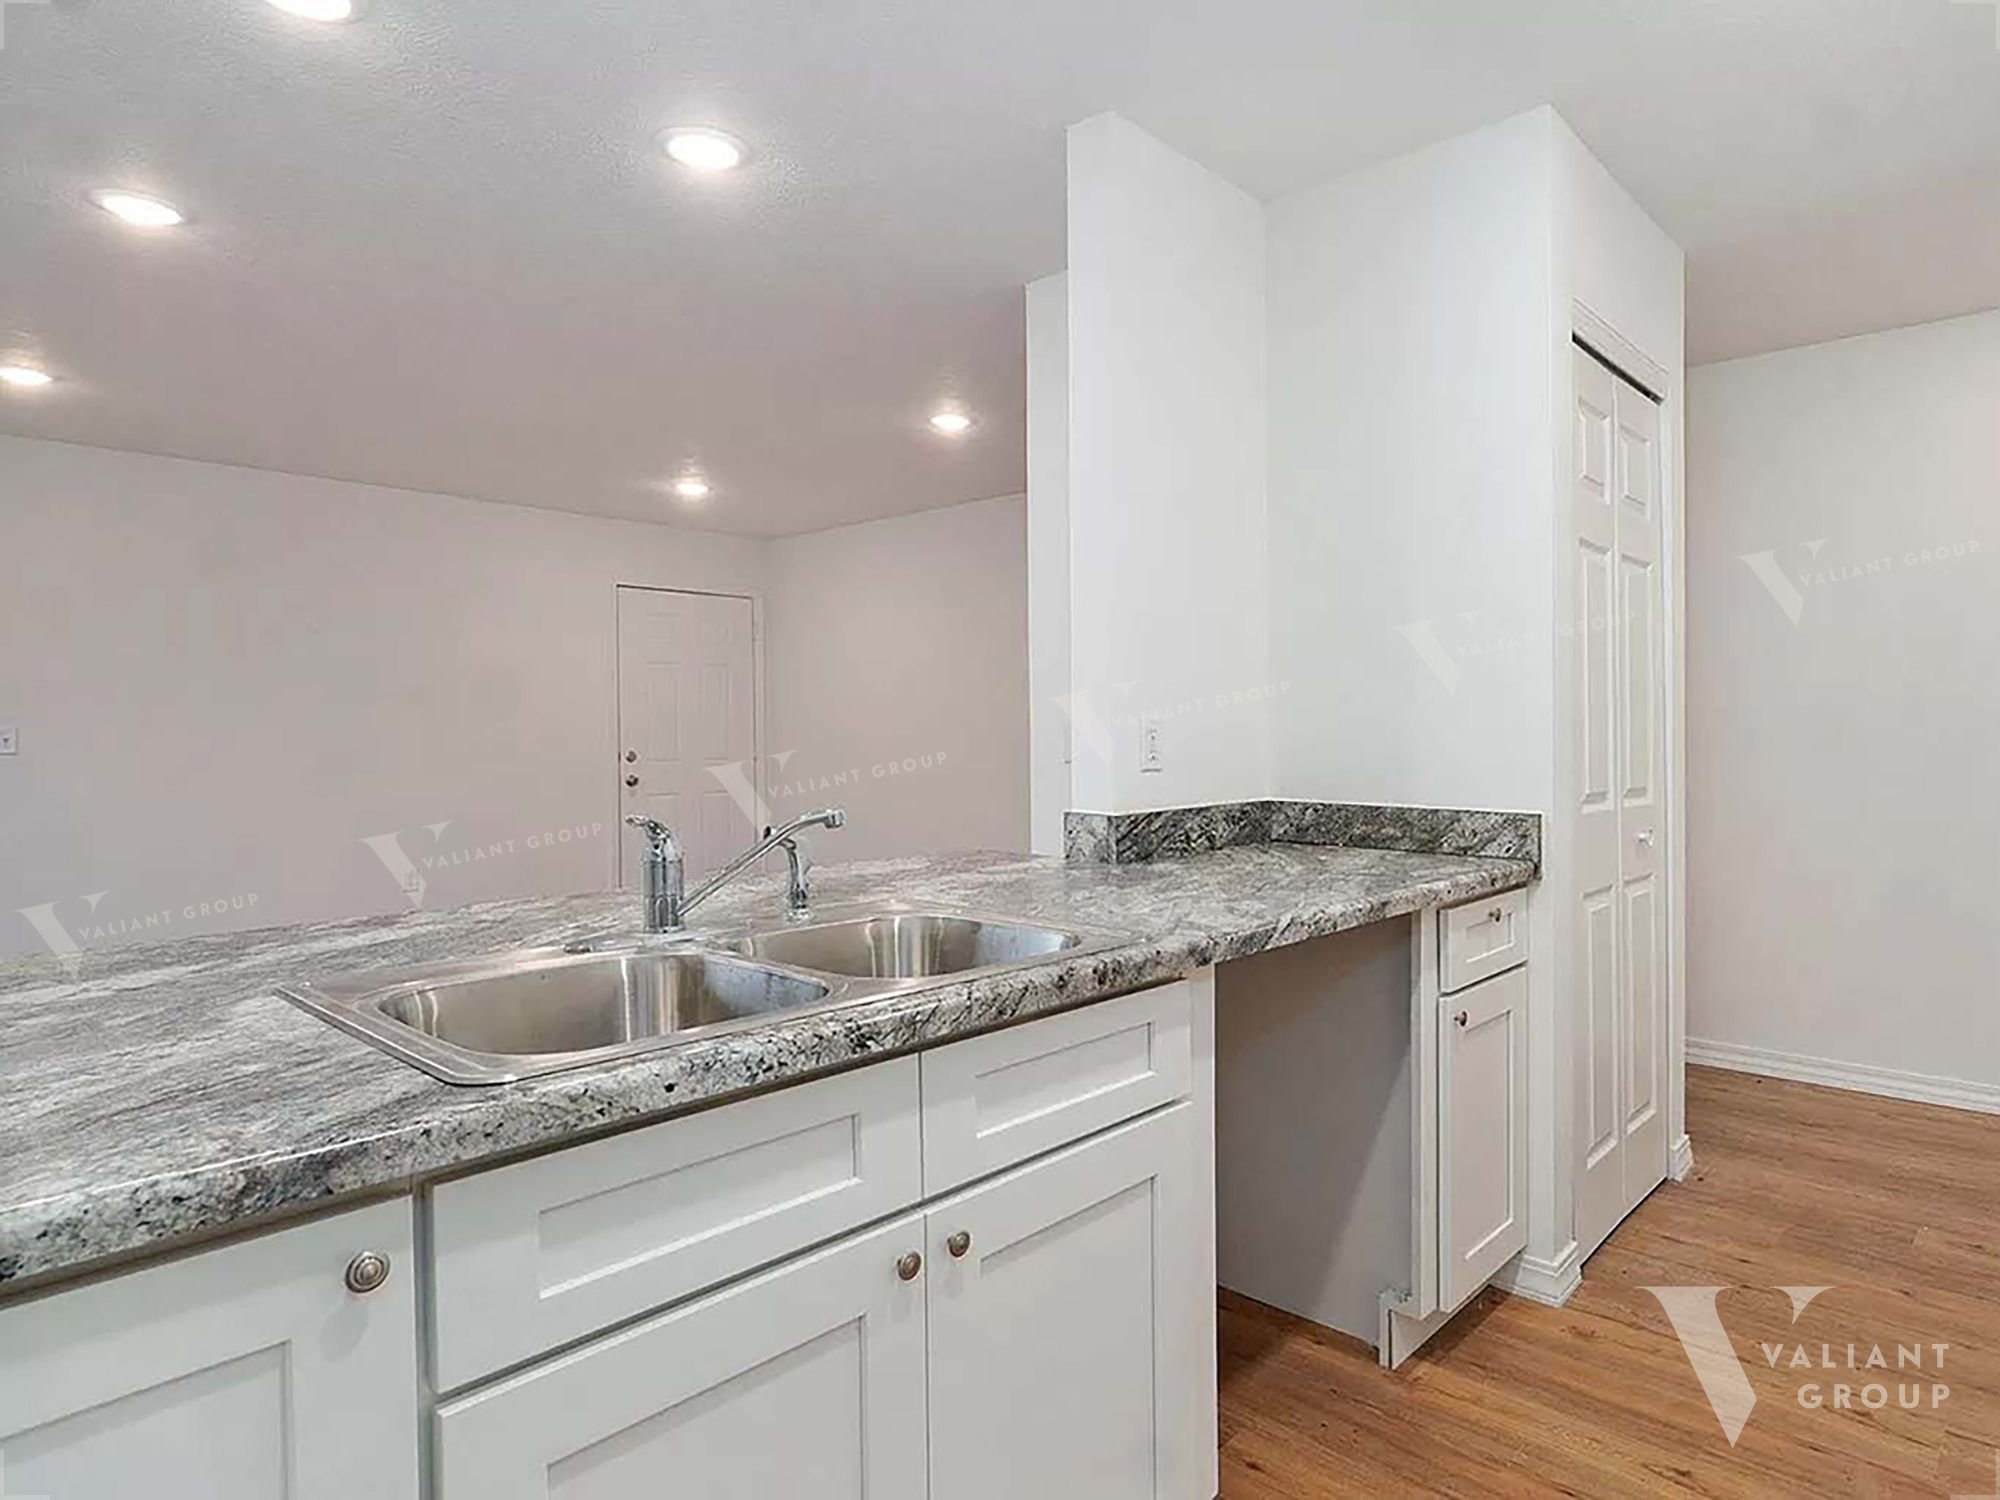 Rental-Duplex-Springfield-MO-1618-W-Scott-St-Unit-B - kitchen sink.jpg